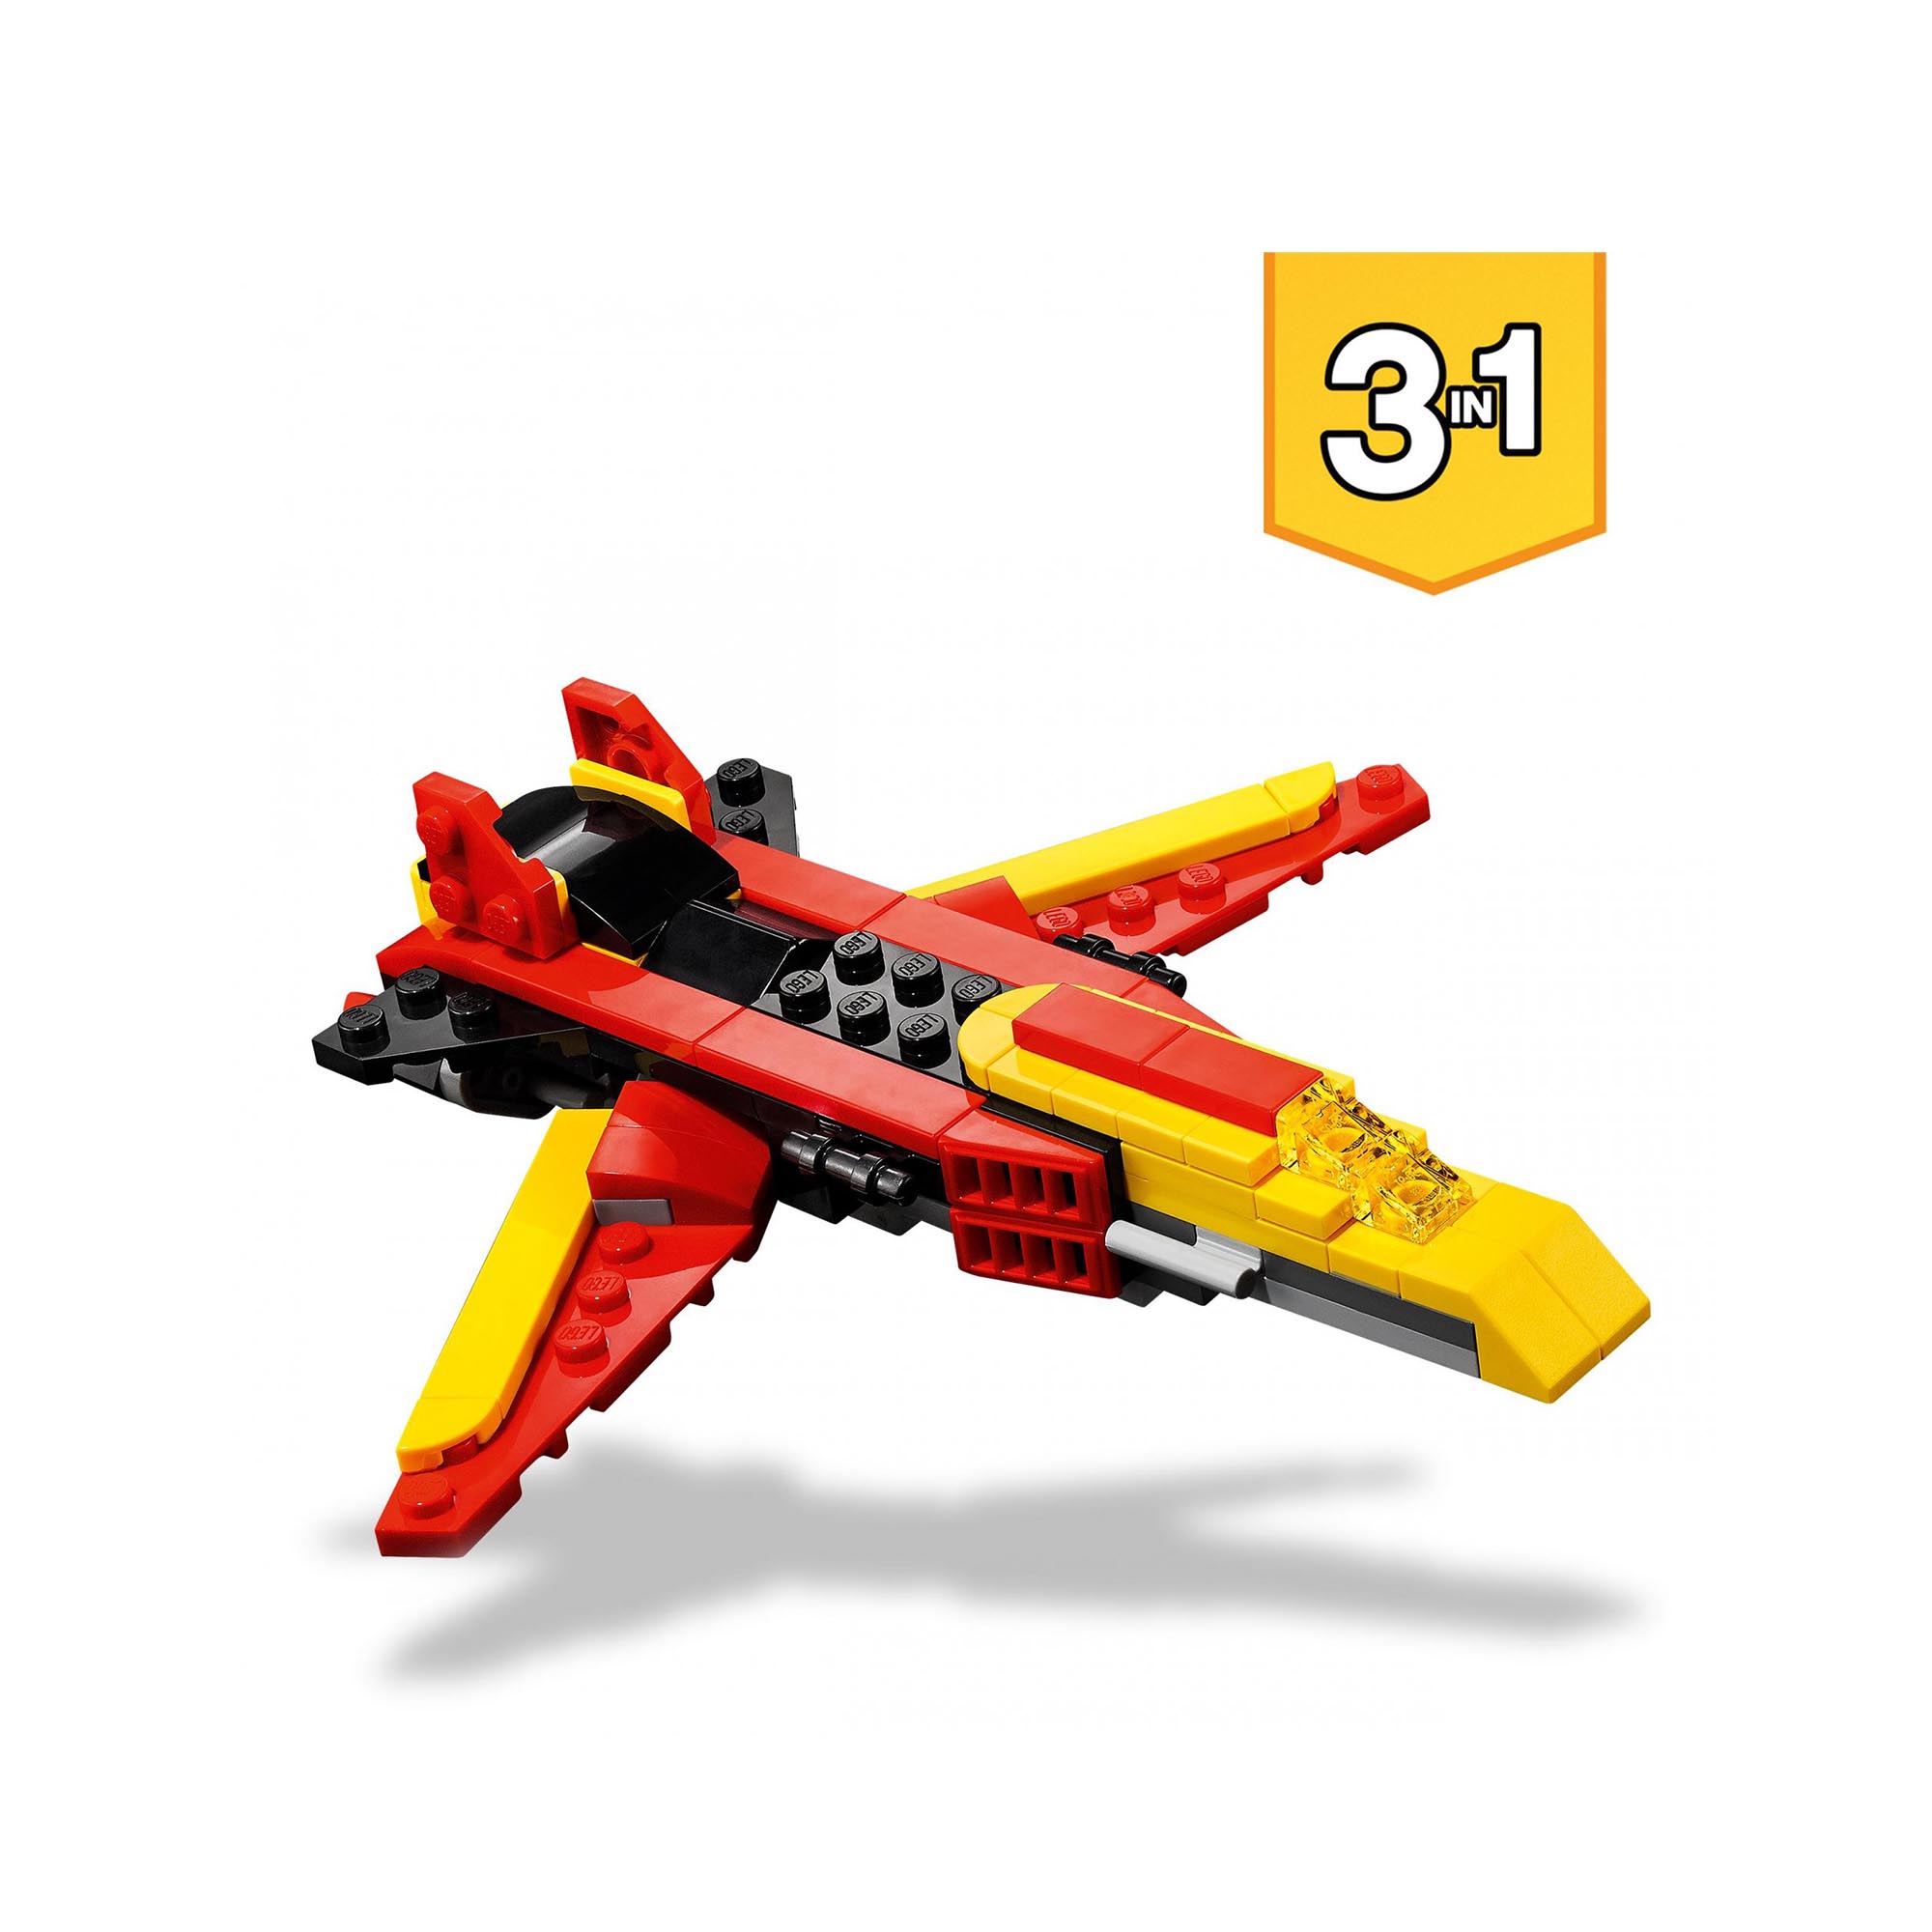 LEGO 31124 Creator 3in1 Super Robot, Set di Costruzioni in Mattoncini, Aereo e D 31124, , large